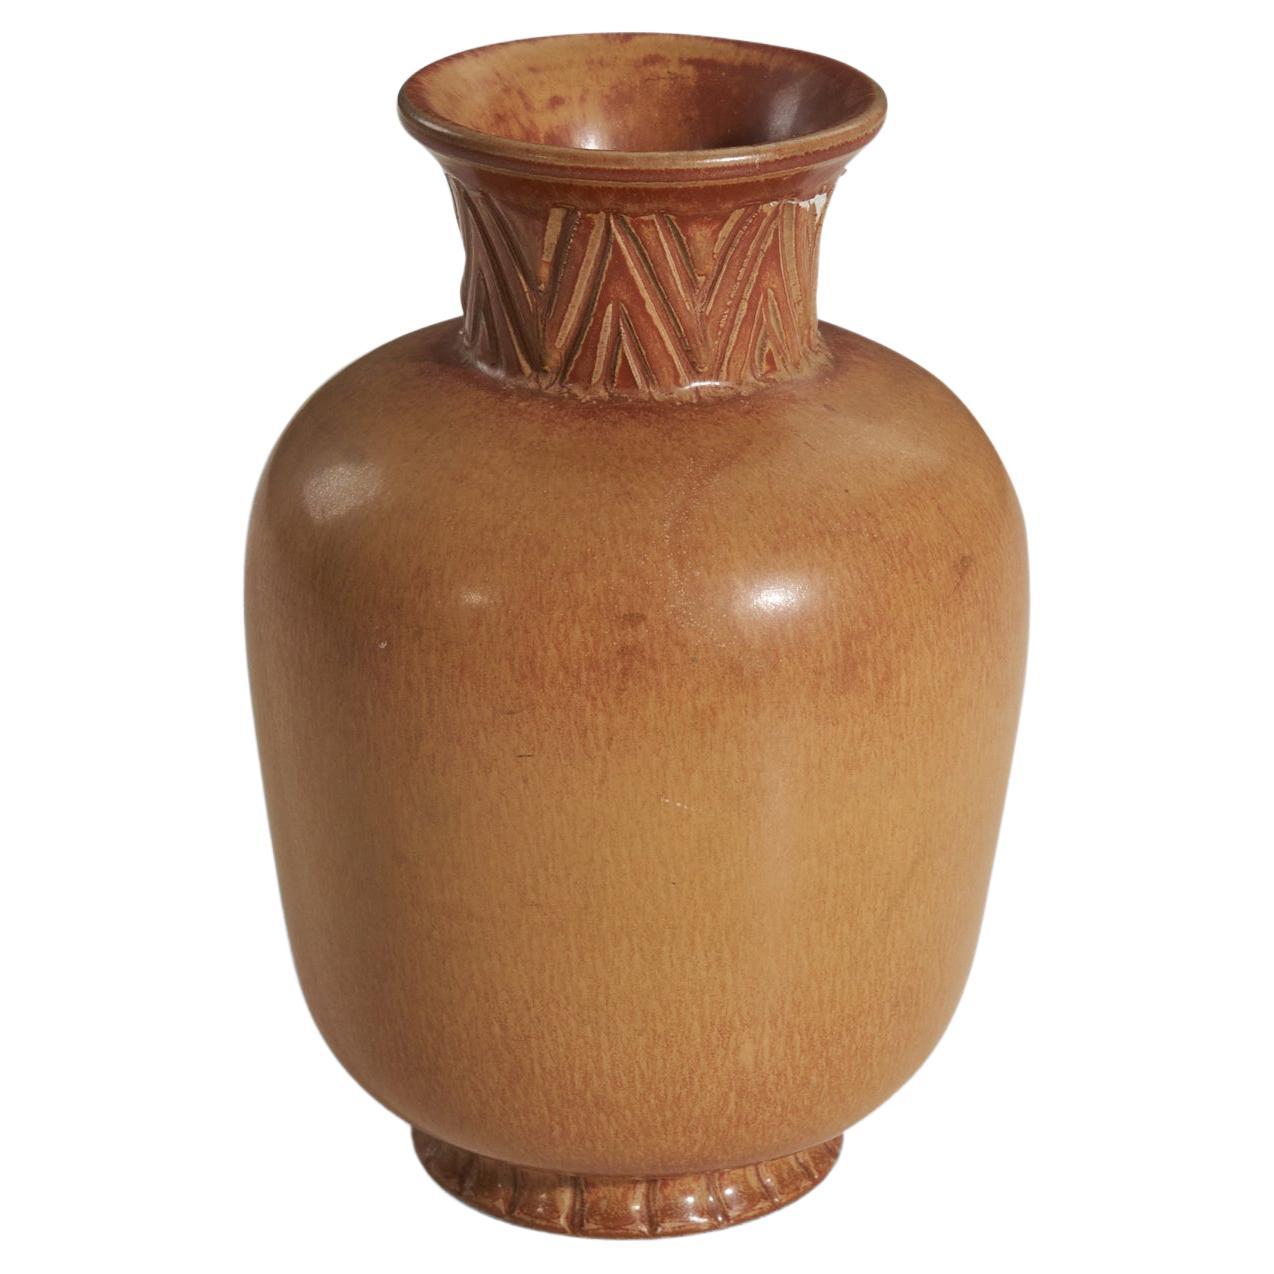 Gunnar Nylund, Vase, Brown Glazed Incised Stoneware, Rörstand, Sweden, 1950s